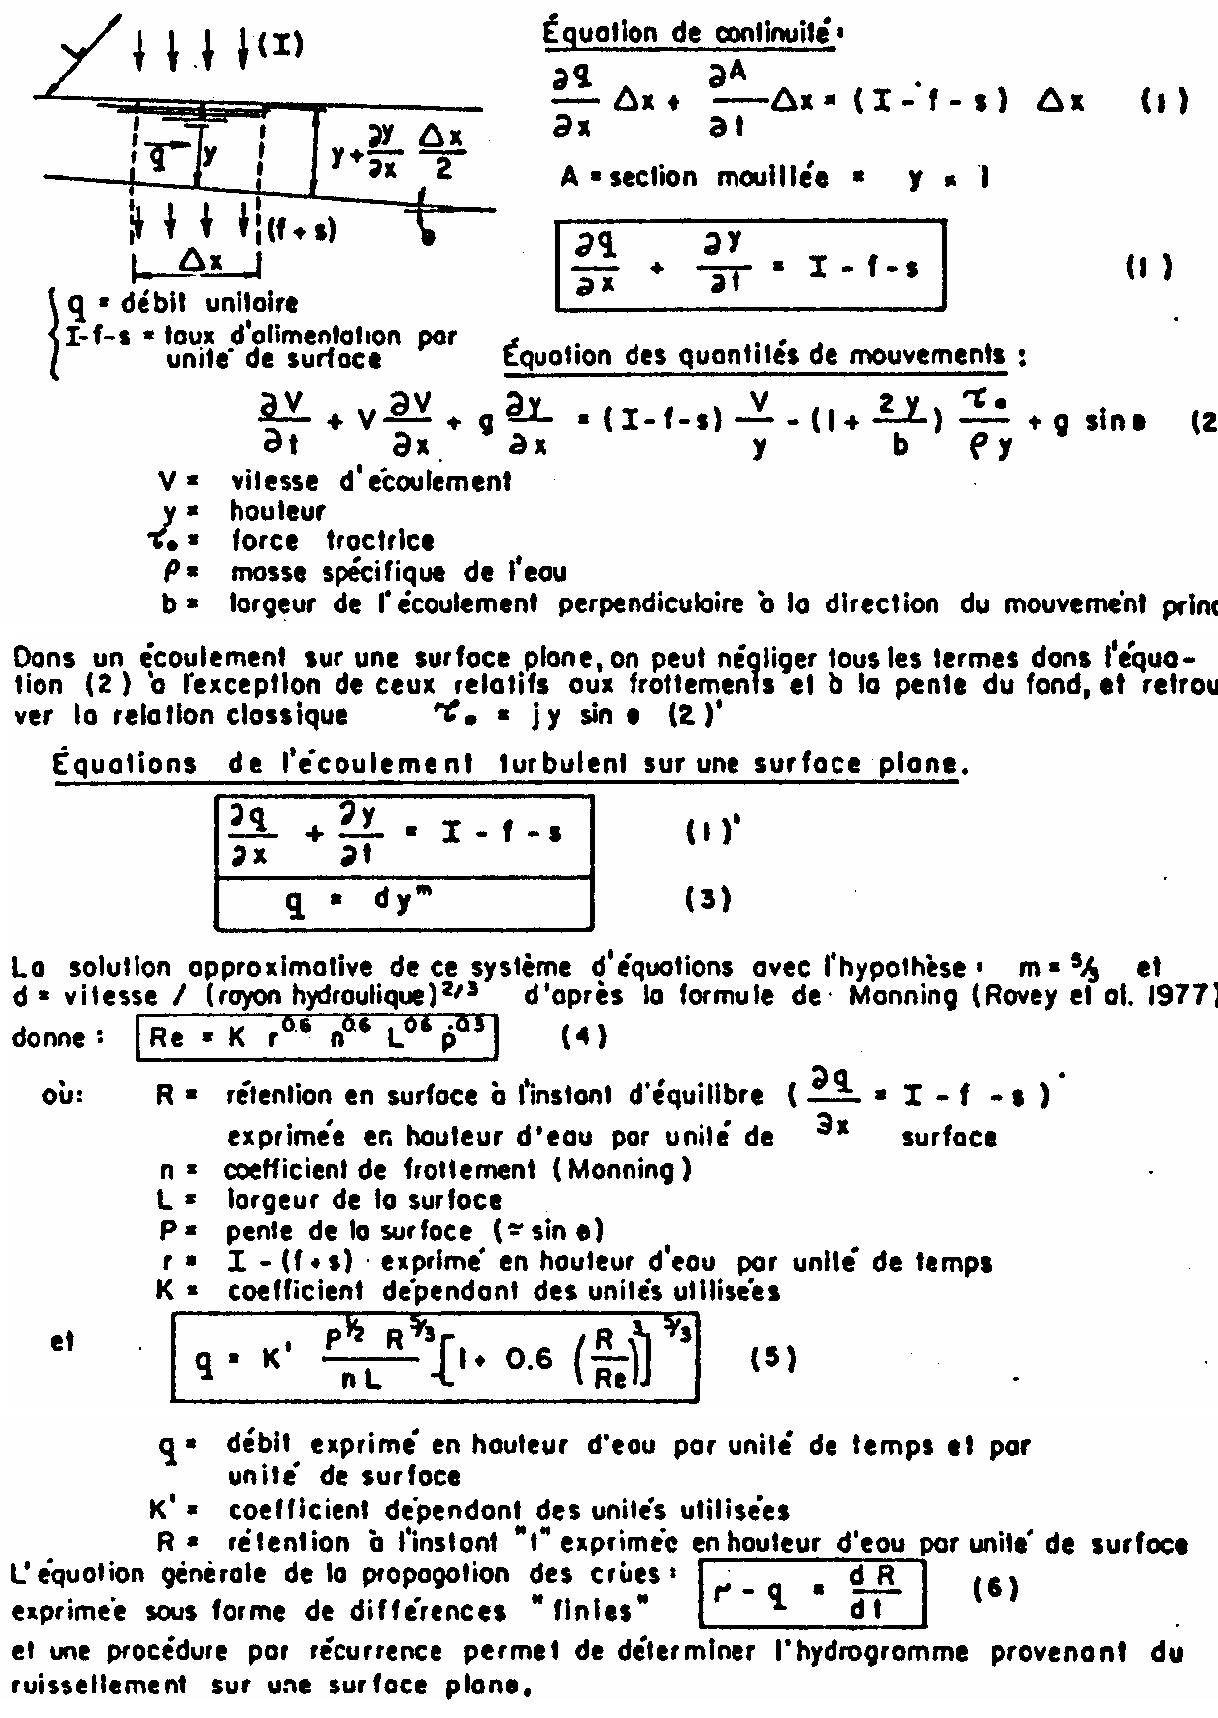 Formules relatives à l'écoulement sur une surface plane (extrait de Mitci, 1978)